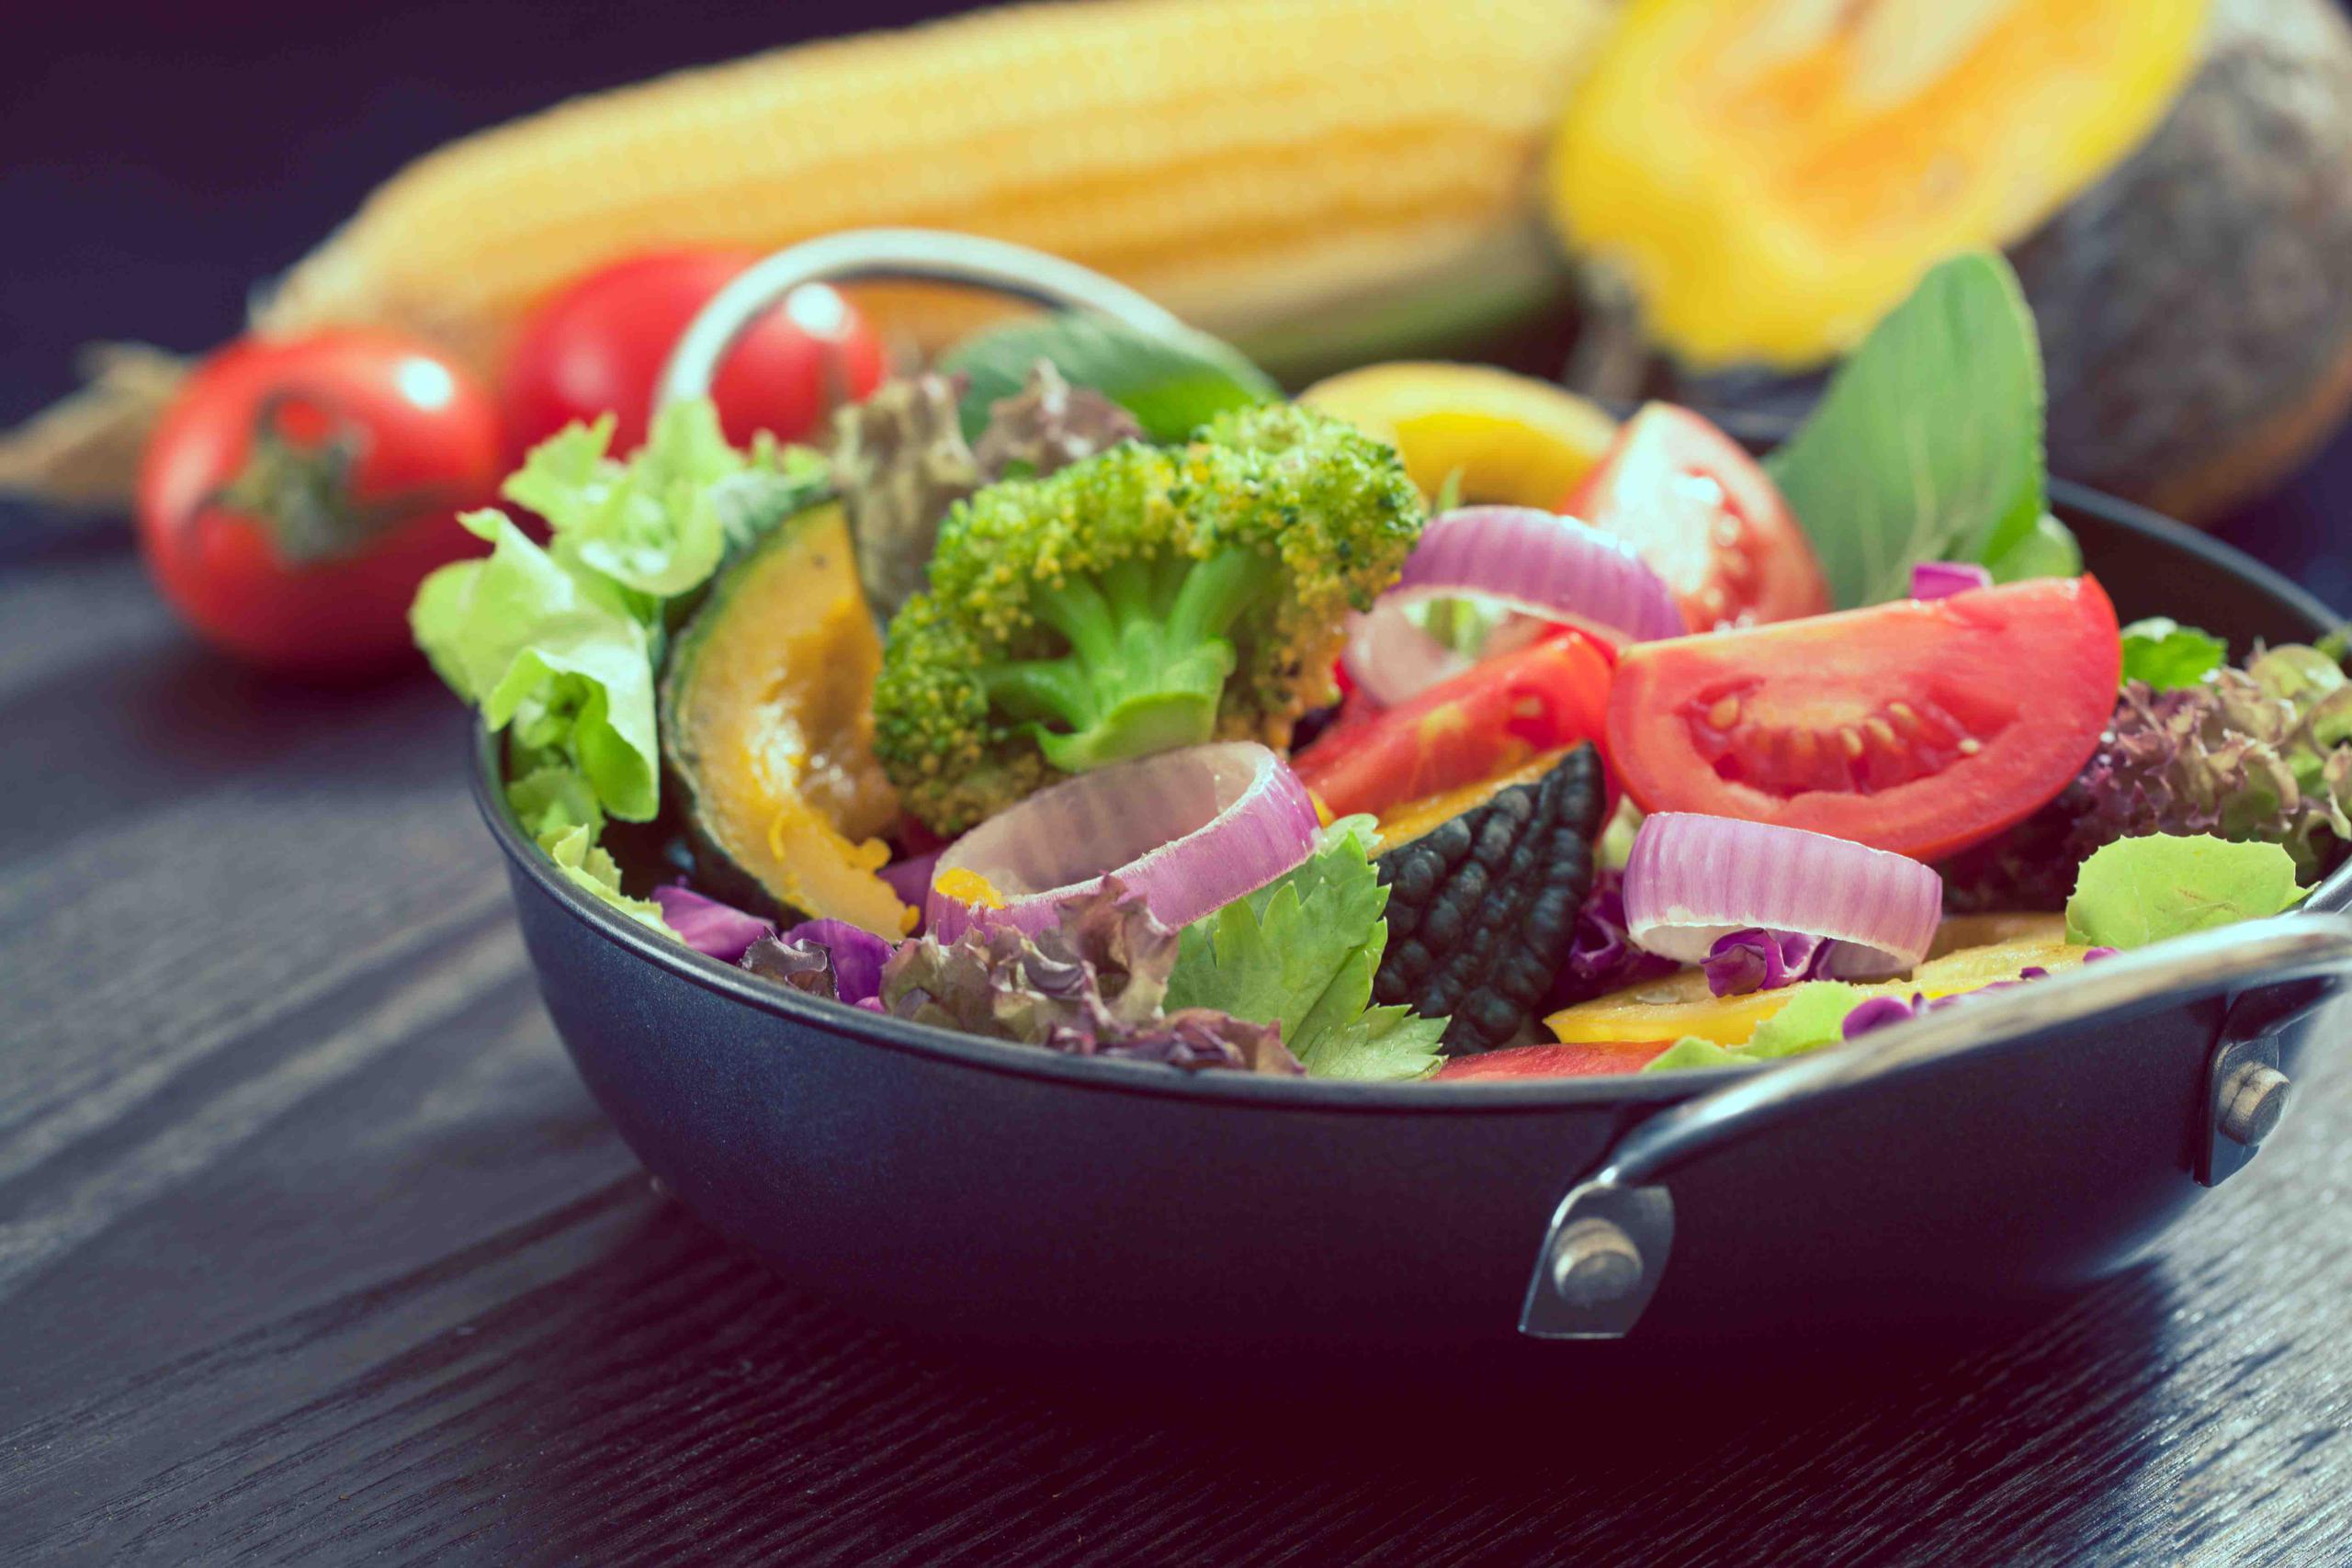 Los vegetales y frutas son lo mejor si deseas tener una alimentación más saludable. (Shutterstock.com)